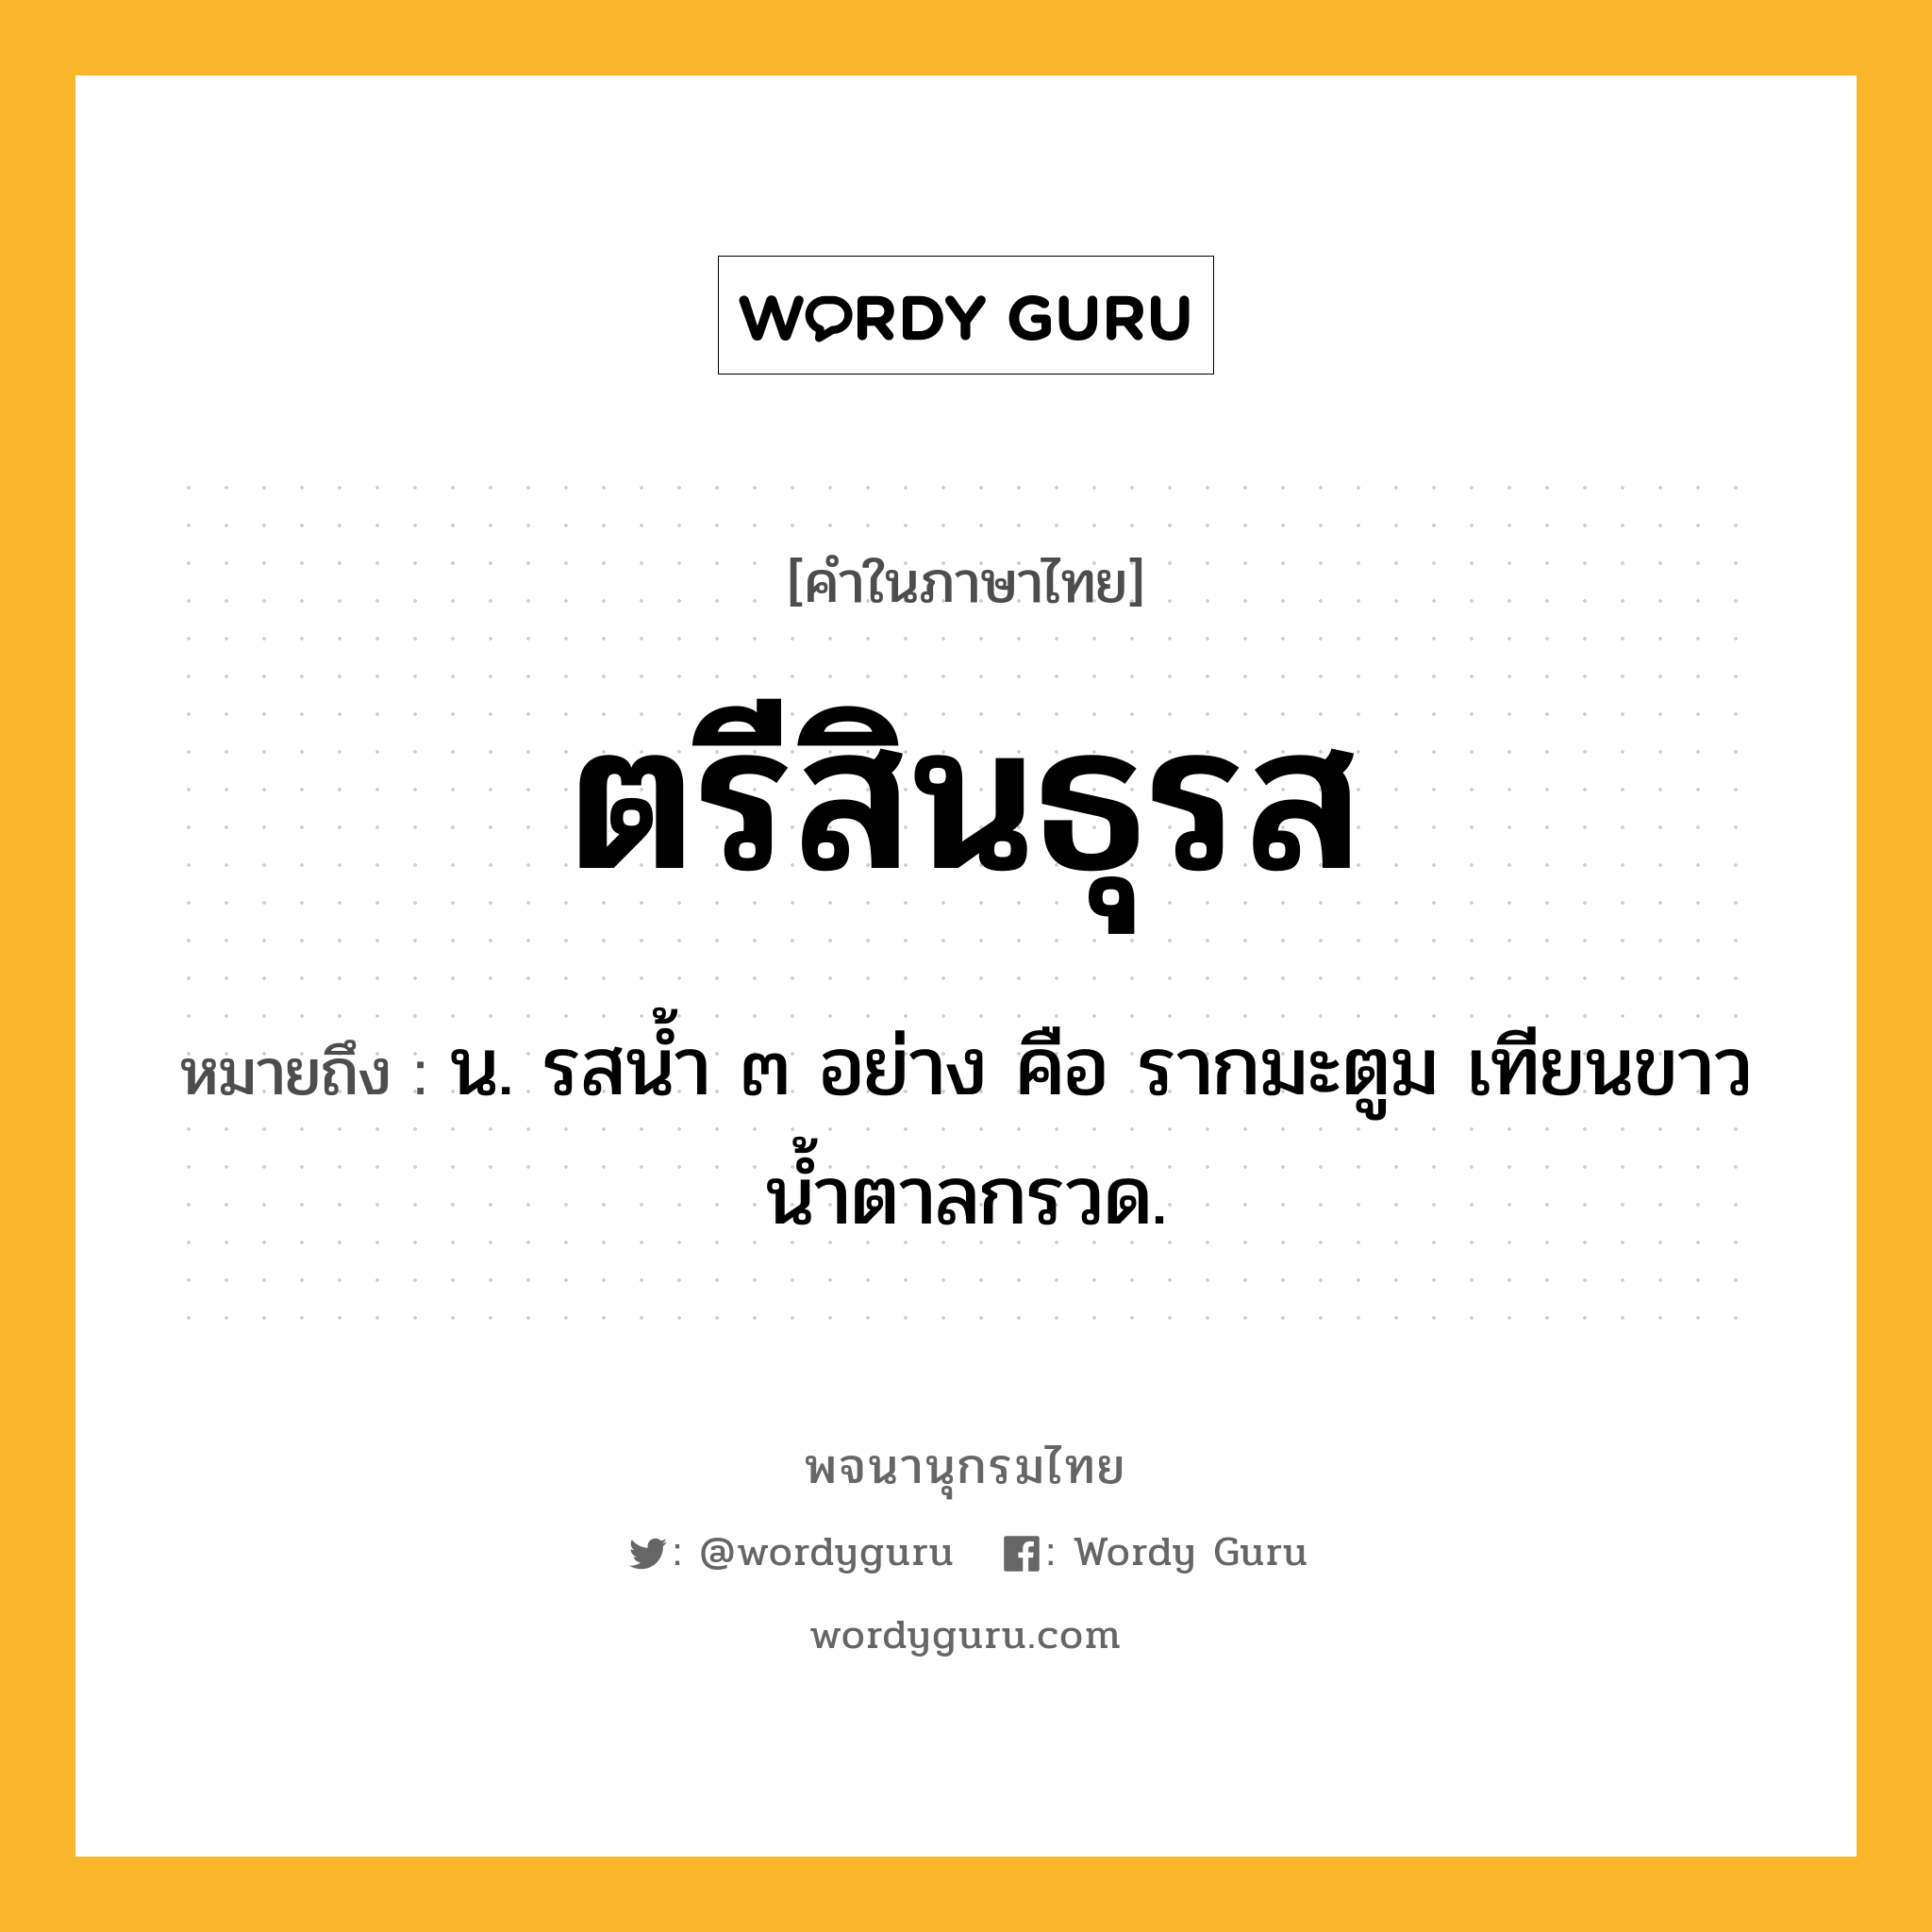 ตรีสินธุรส ความหมาย หมายถึงอะไร?, คำในภาษาไทย ตรีสินธุรส หมายถึง น. รสนํ้า ๓ อย่าง คือ รากมะตูม เทียนขาว นํ้าตาลกรวด.